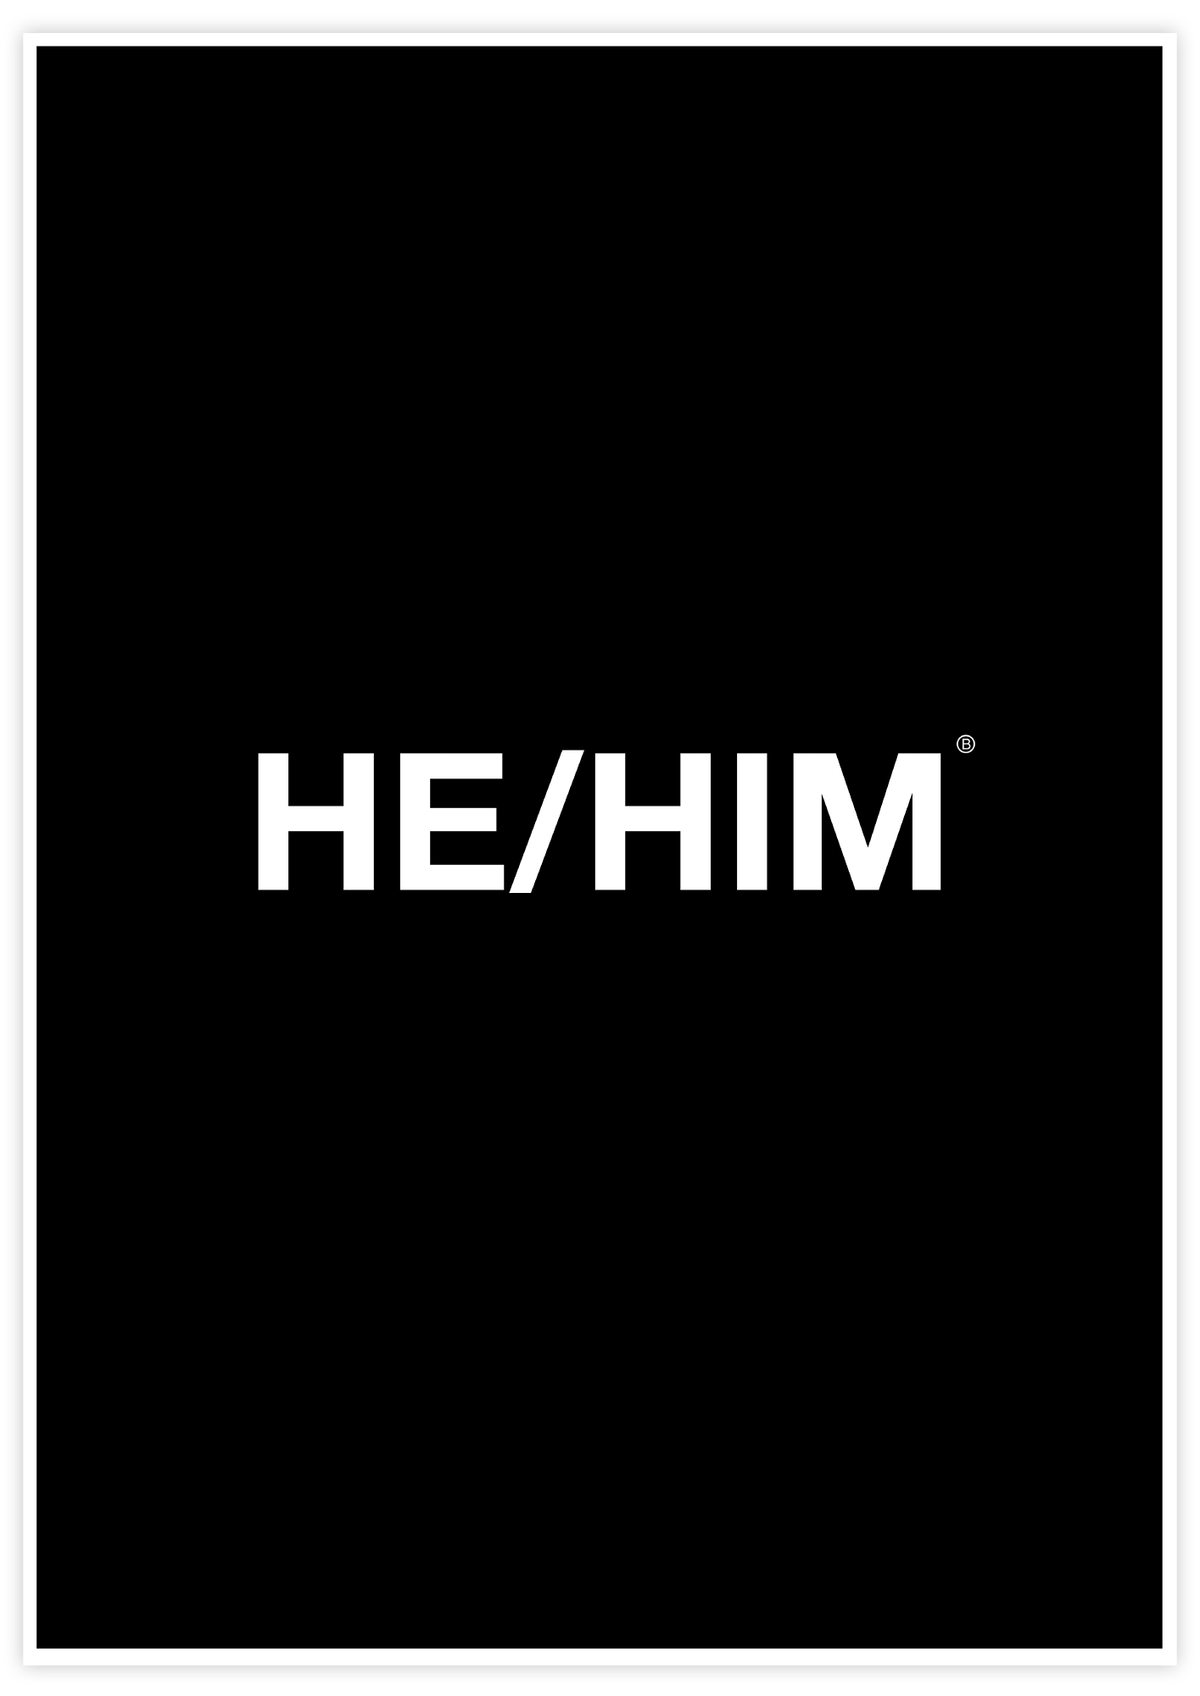 He/Him Helvetica